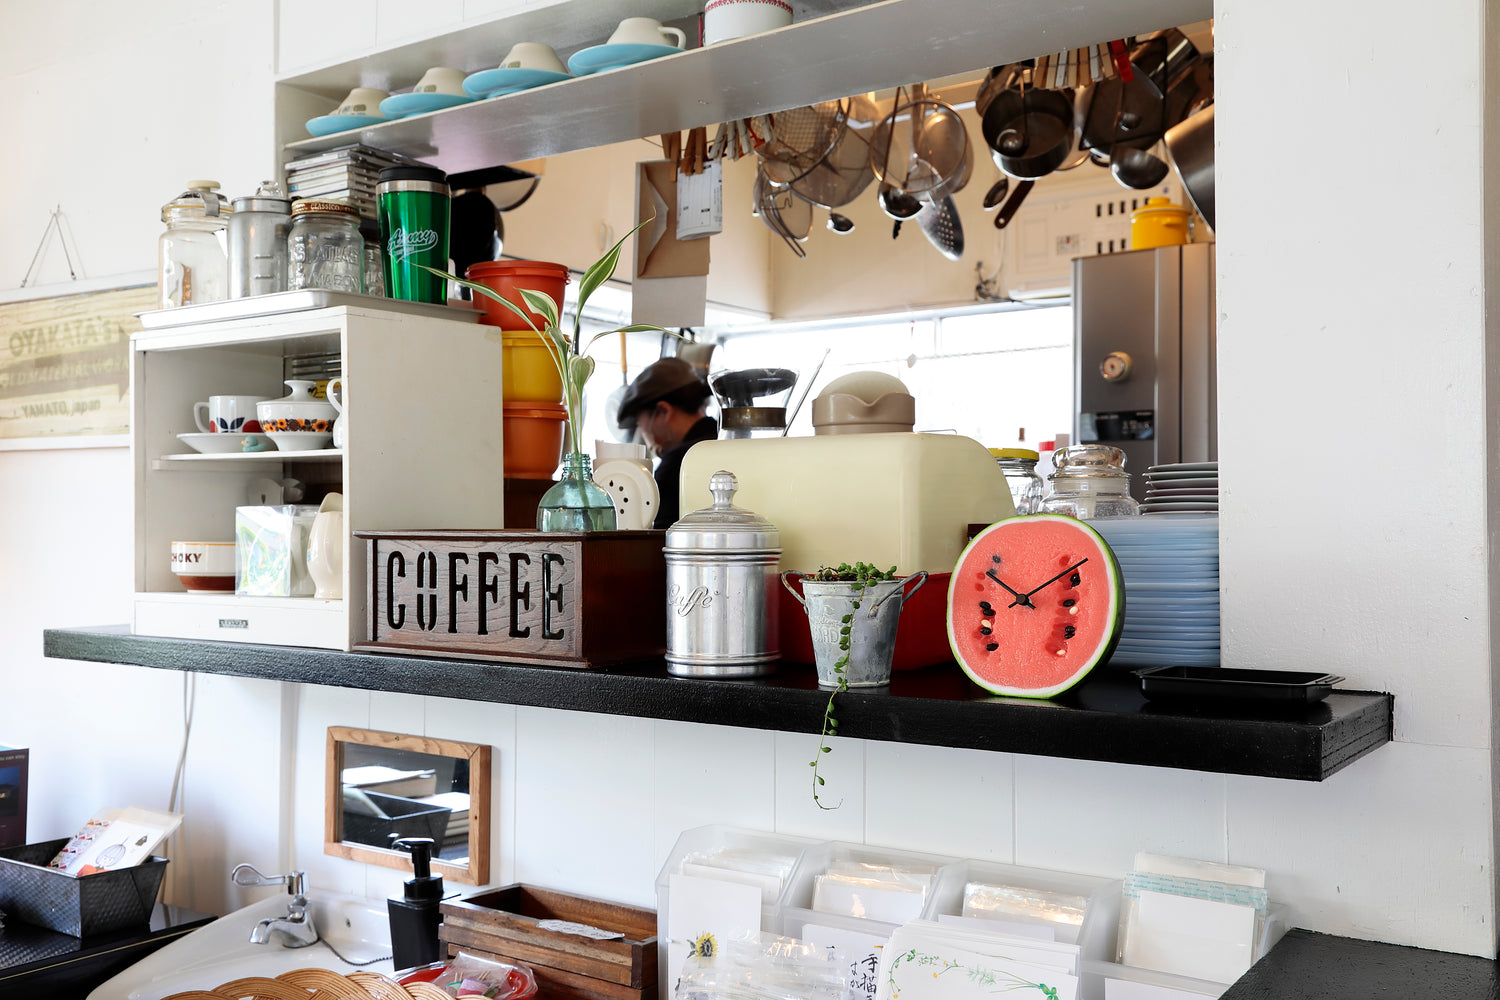 元祖食品サンプル屋「Replica Food Clock スイカ」のキッチンの横に置いたイメージ画像です。